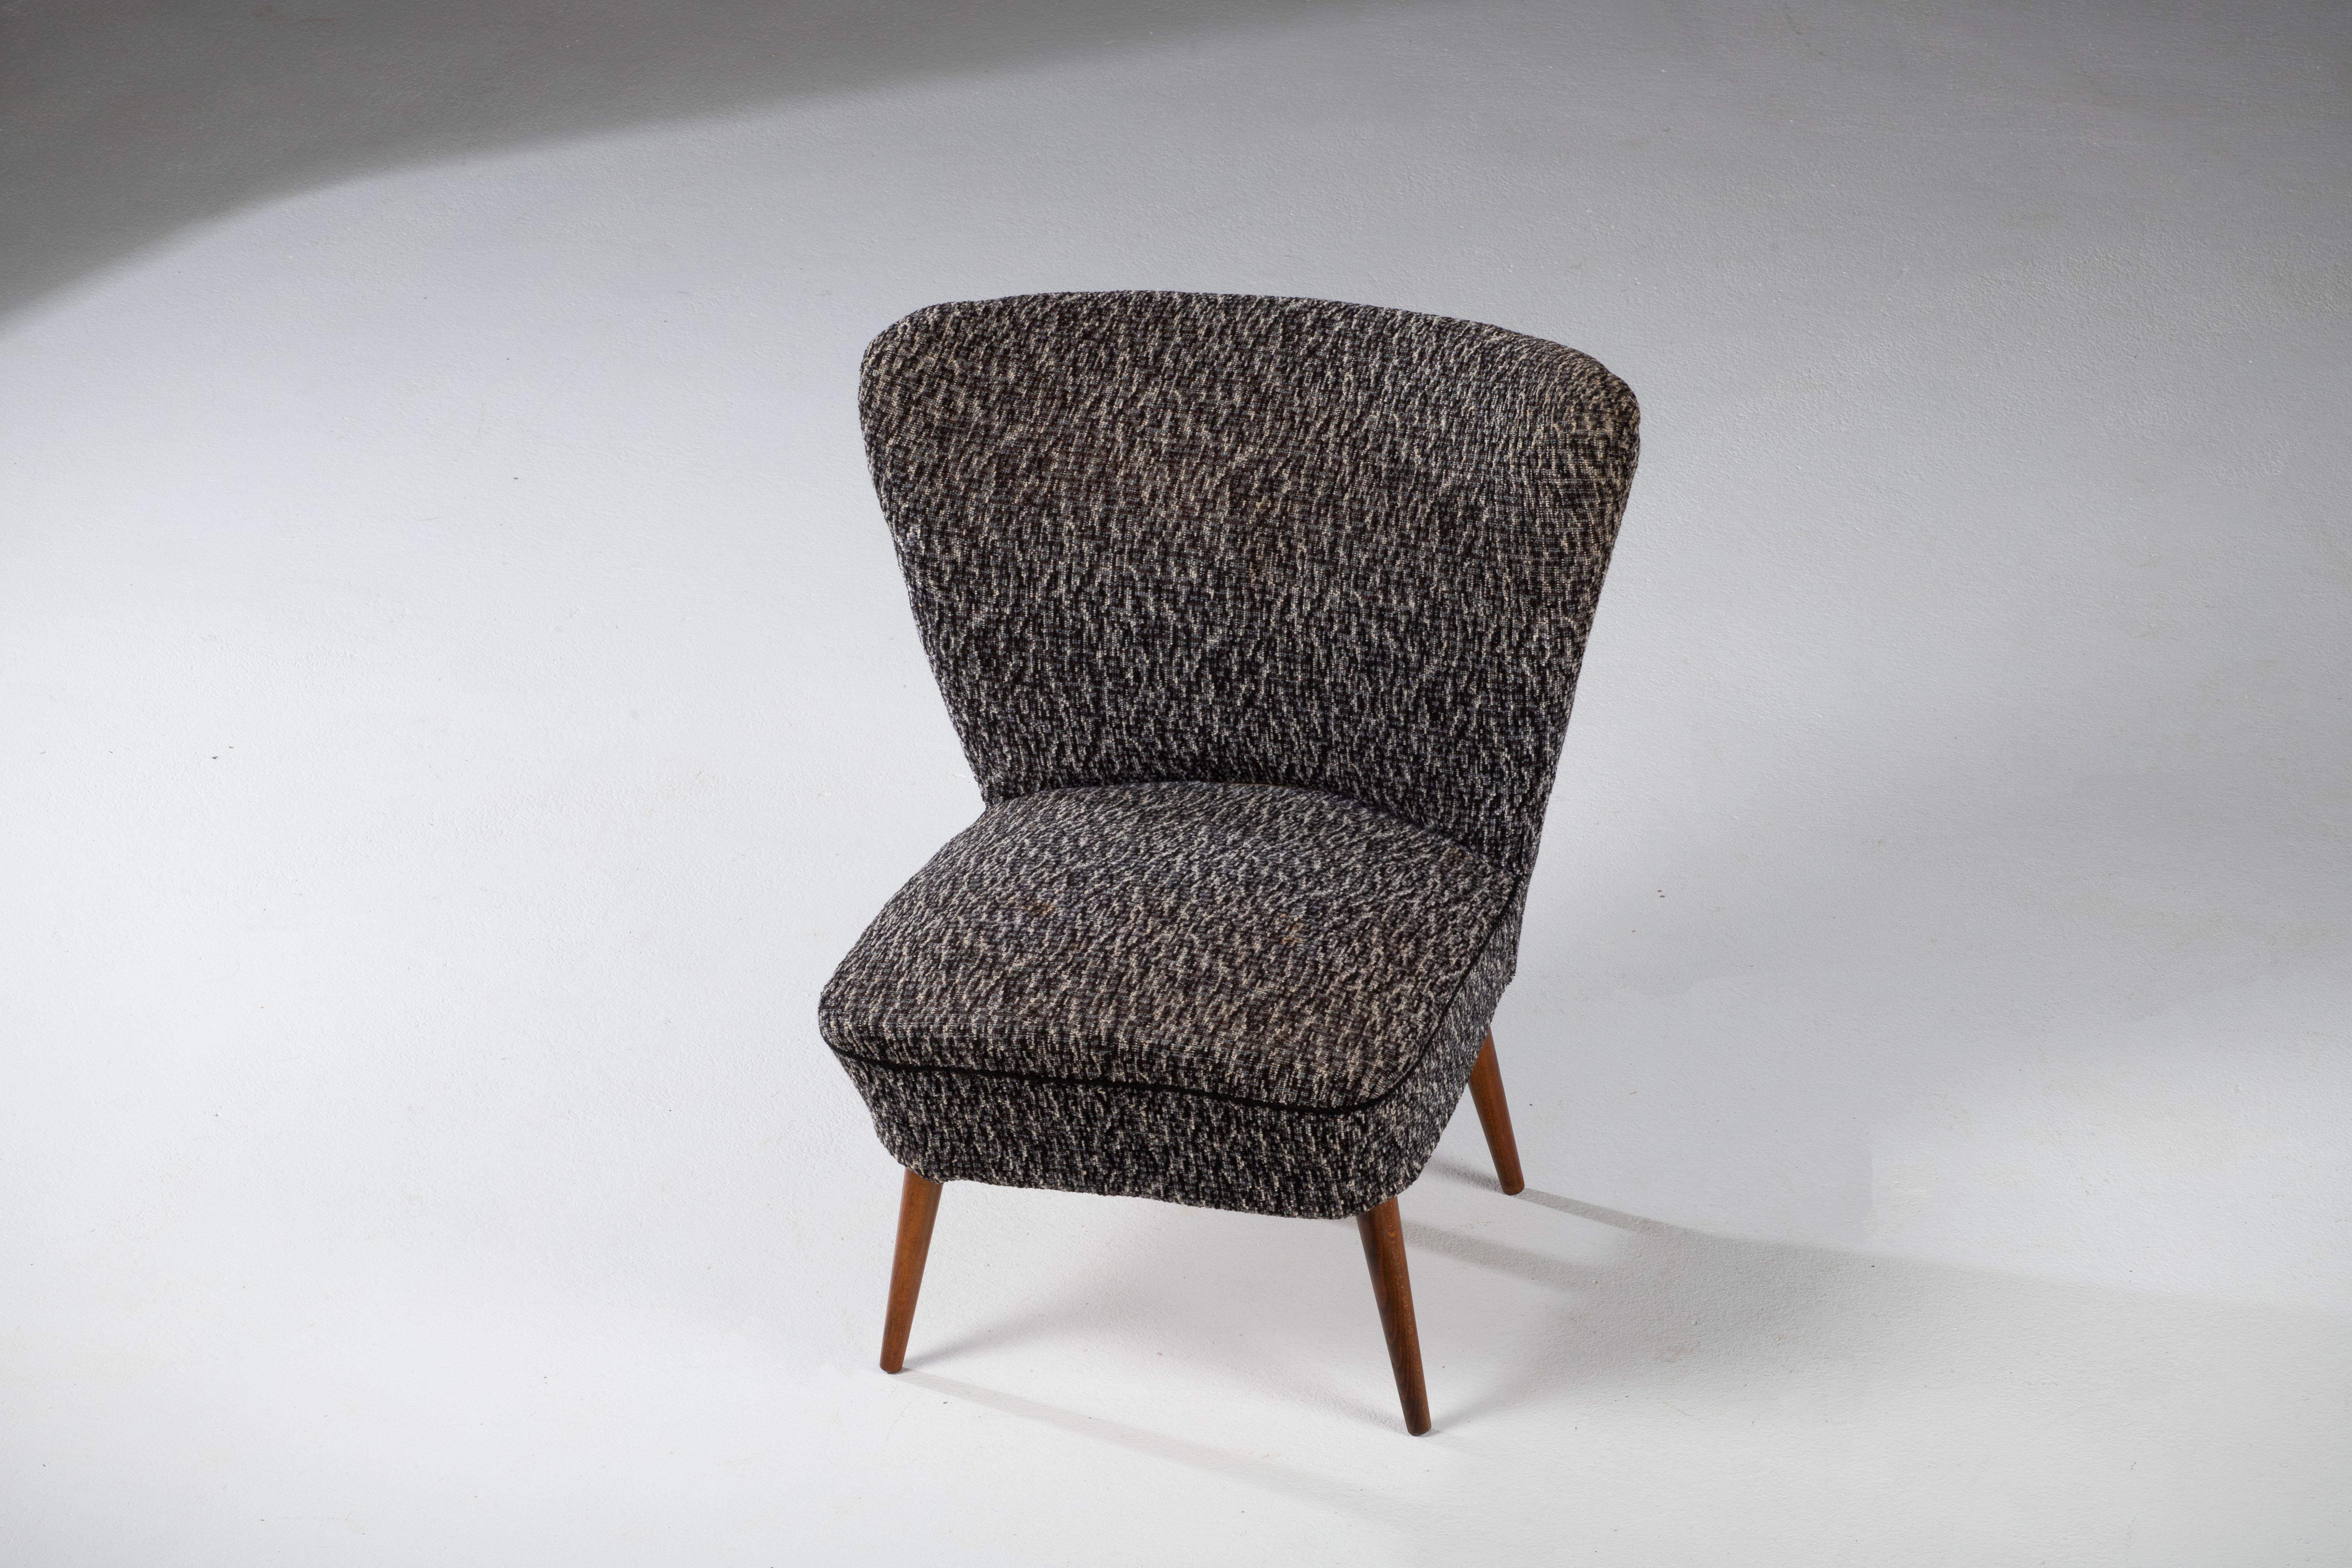 Cockatil-Sessel aus der Mitte des Jahrhunderts mit schöner Patina und Eichenholzstruktur. Elegantes Design und hoher Komfort.
Zeigt Gebrauchsspuren und einen kleinen Fleck auf dem Stoff.

